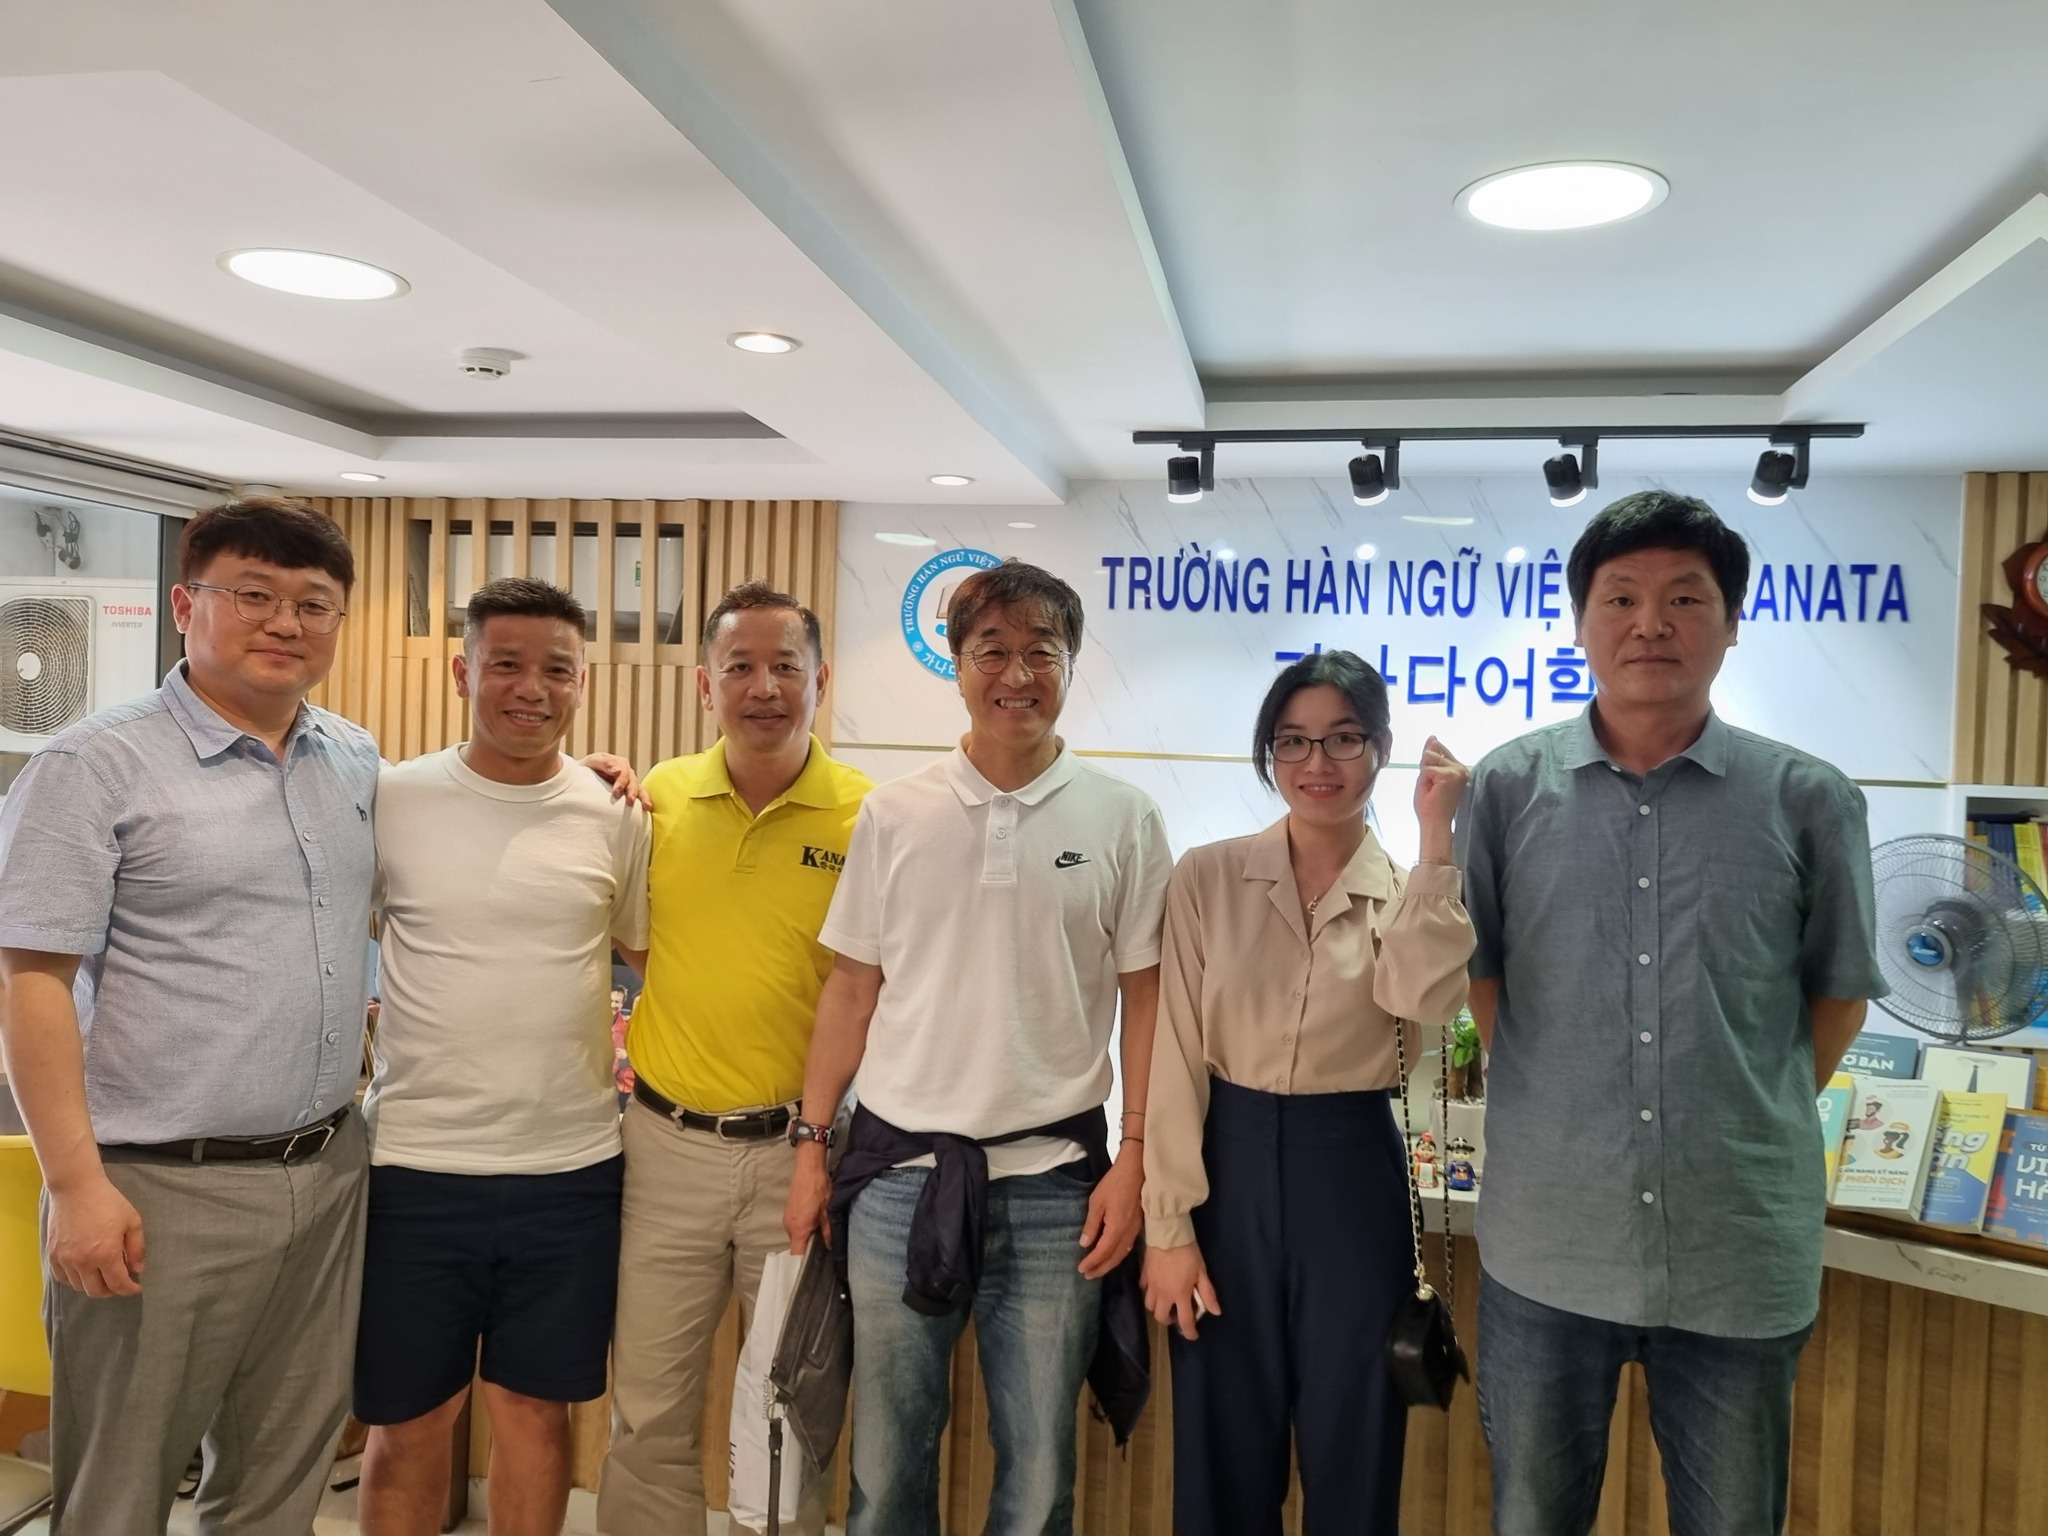 Cựu trợ lý ngôn ngữ cho HLV Park Hang Seo - ông Lê Huy Khoa chia sẻ trợ lý Lee Yong Jin vừa có chuyến du lịch sang Việt Nam